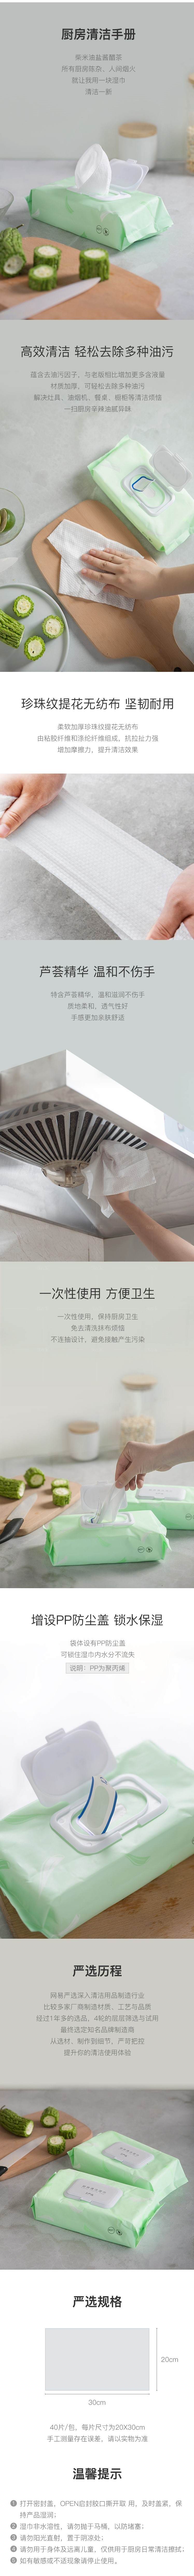 网易严选系列厨房除油污清洁湿巾的详细介绍